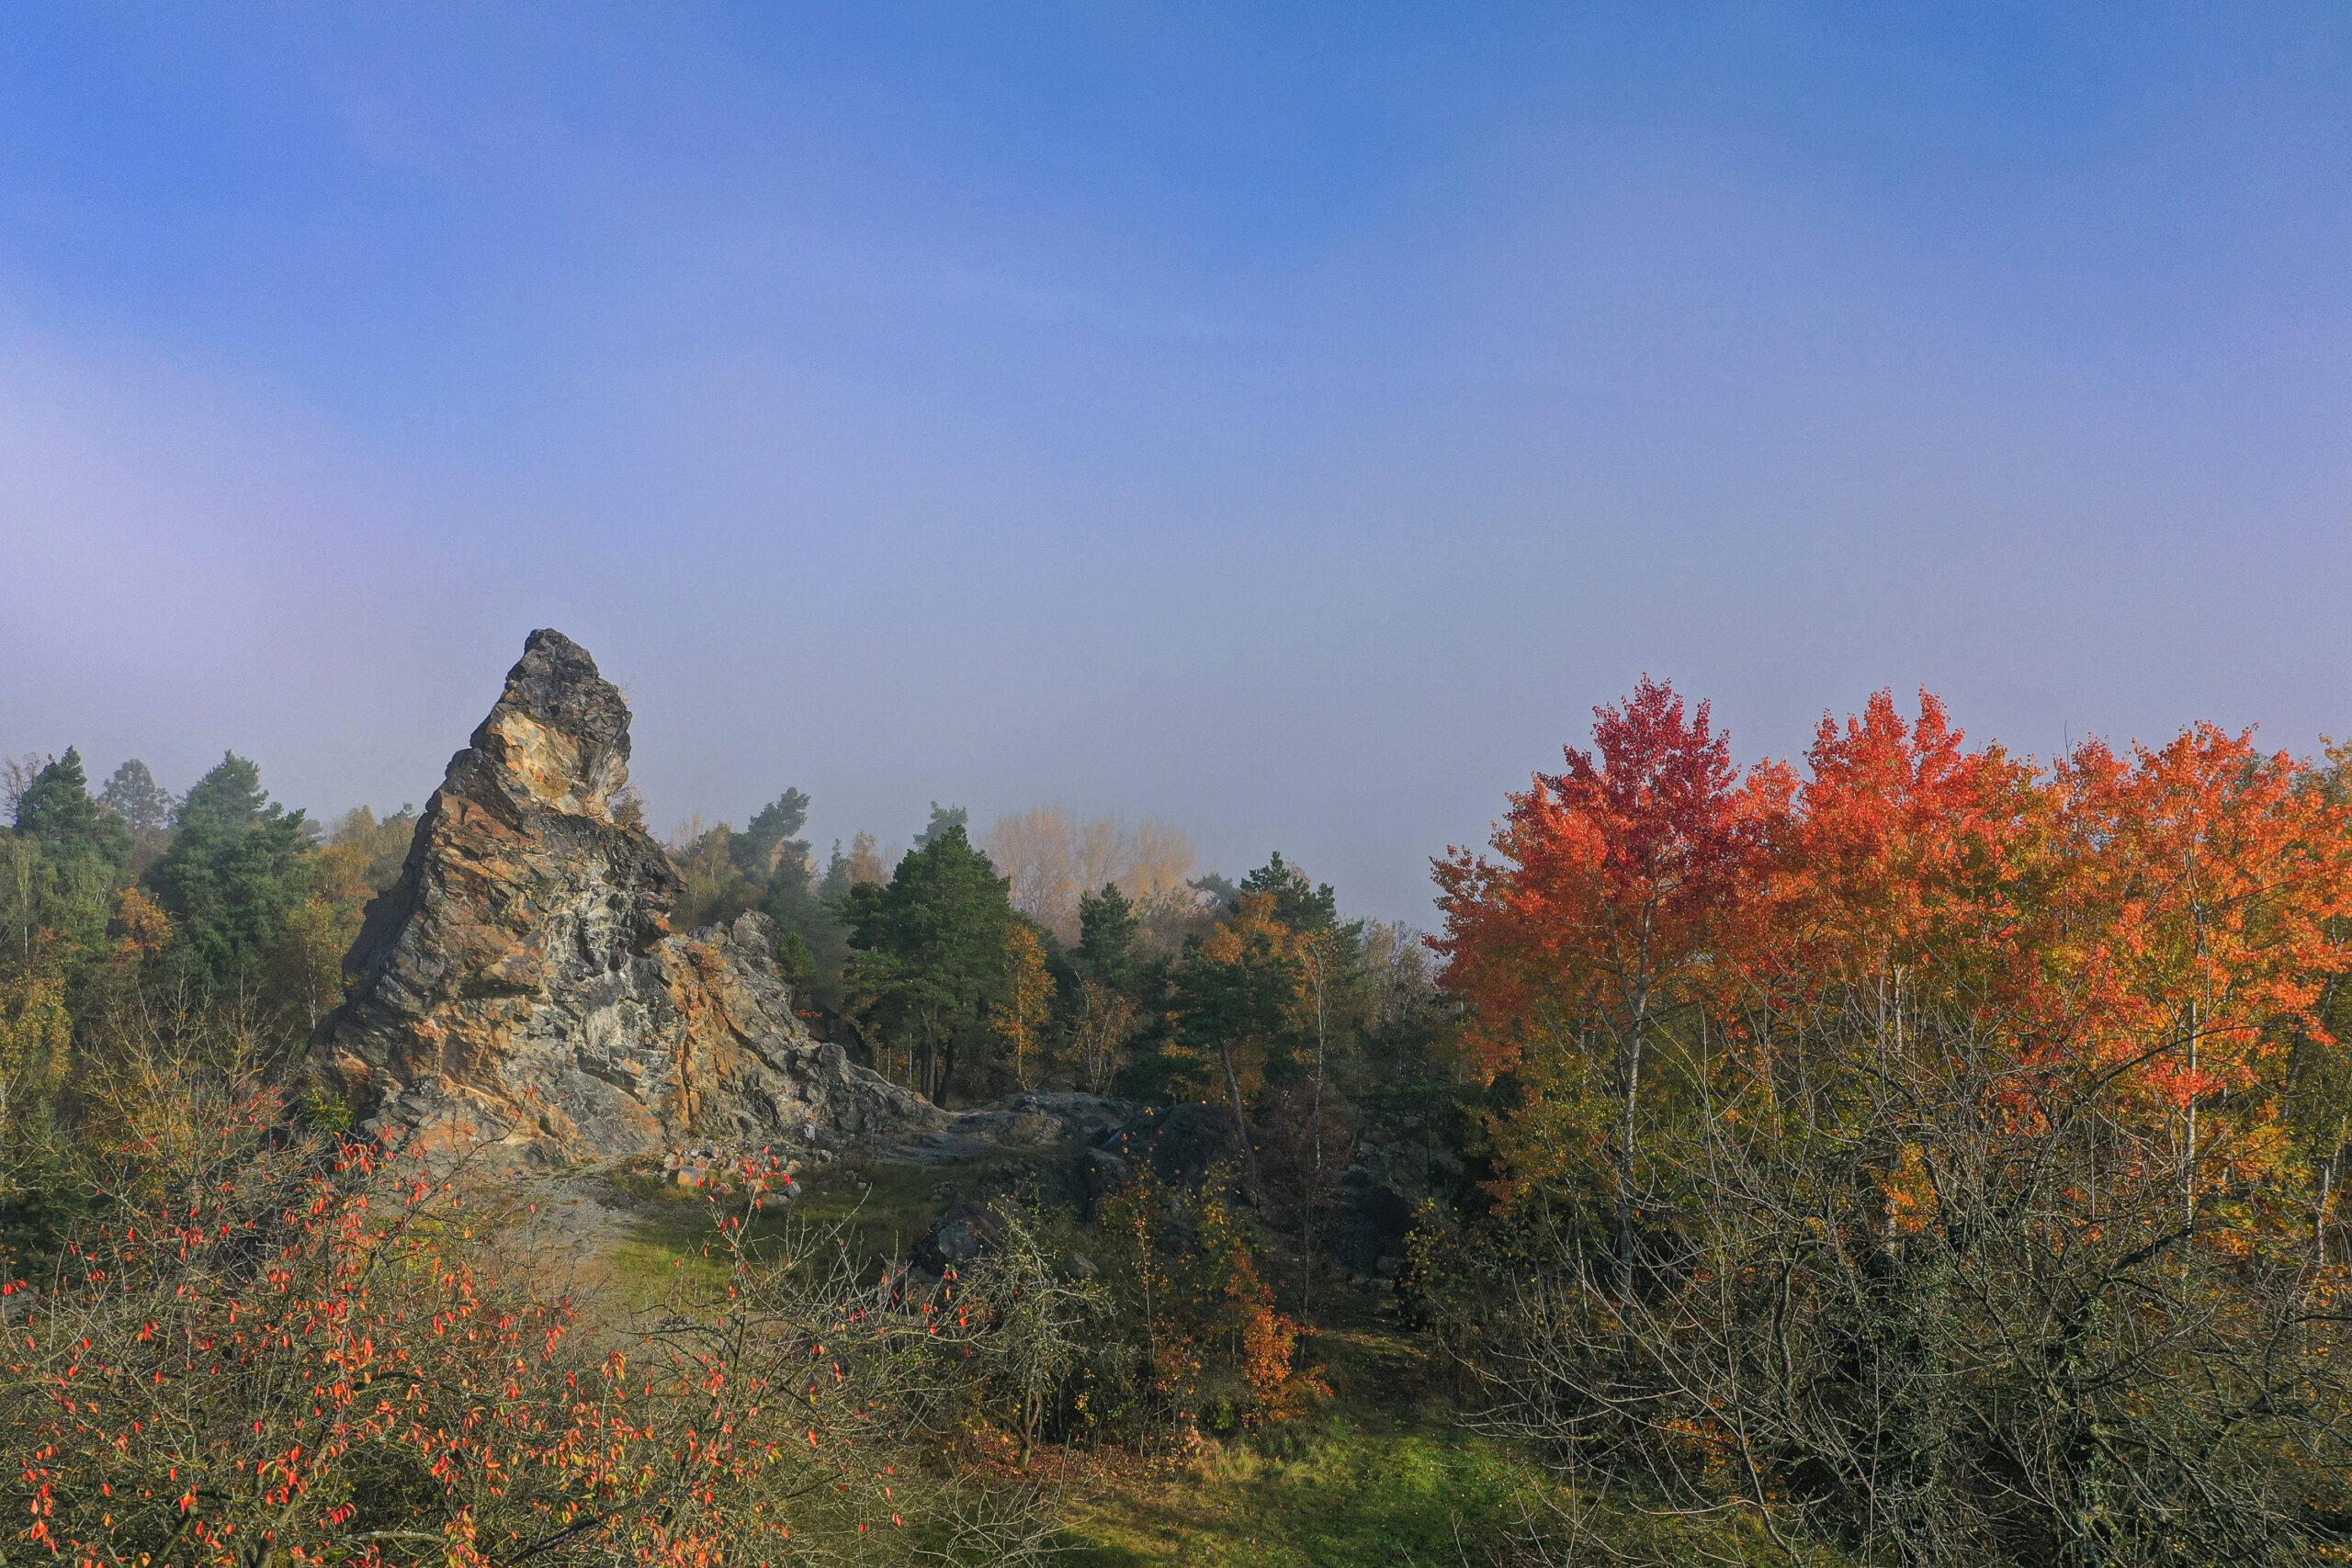 <h1>Skalní útvar Ostrá hůrka</h1><br />Pohled z ptačí perspektivy. V levé části se tyčí jehlancovitý skalní útvar, pravé části dominuje několik oranžově až červeně zbarvených listnatých stromů (osiky). V horní polovině snímku vidíme nebe s rozpouštějící se mlhou.